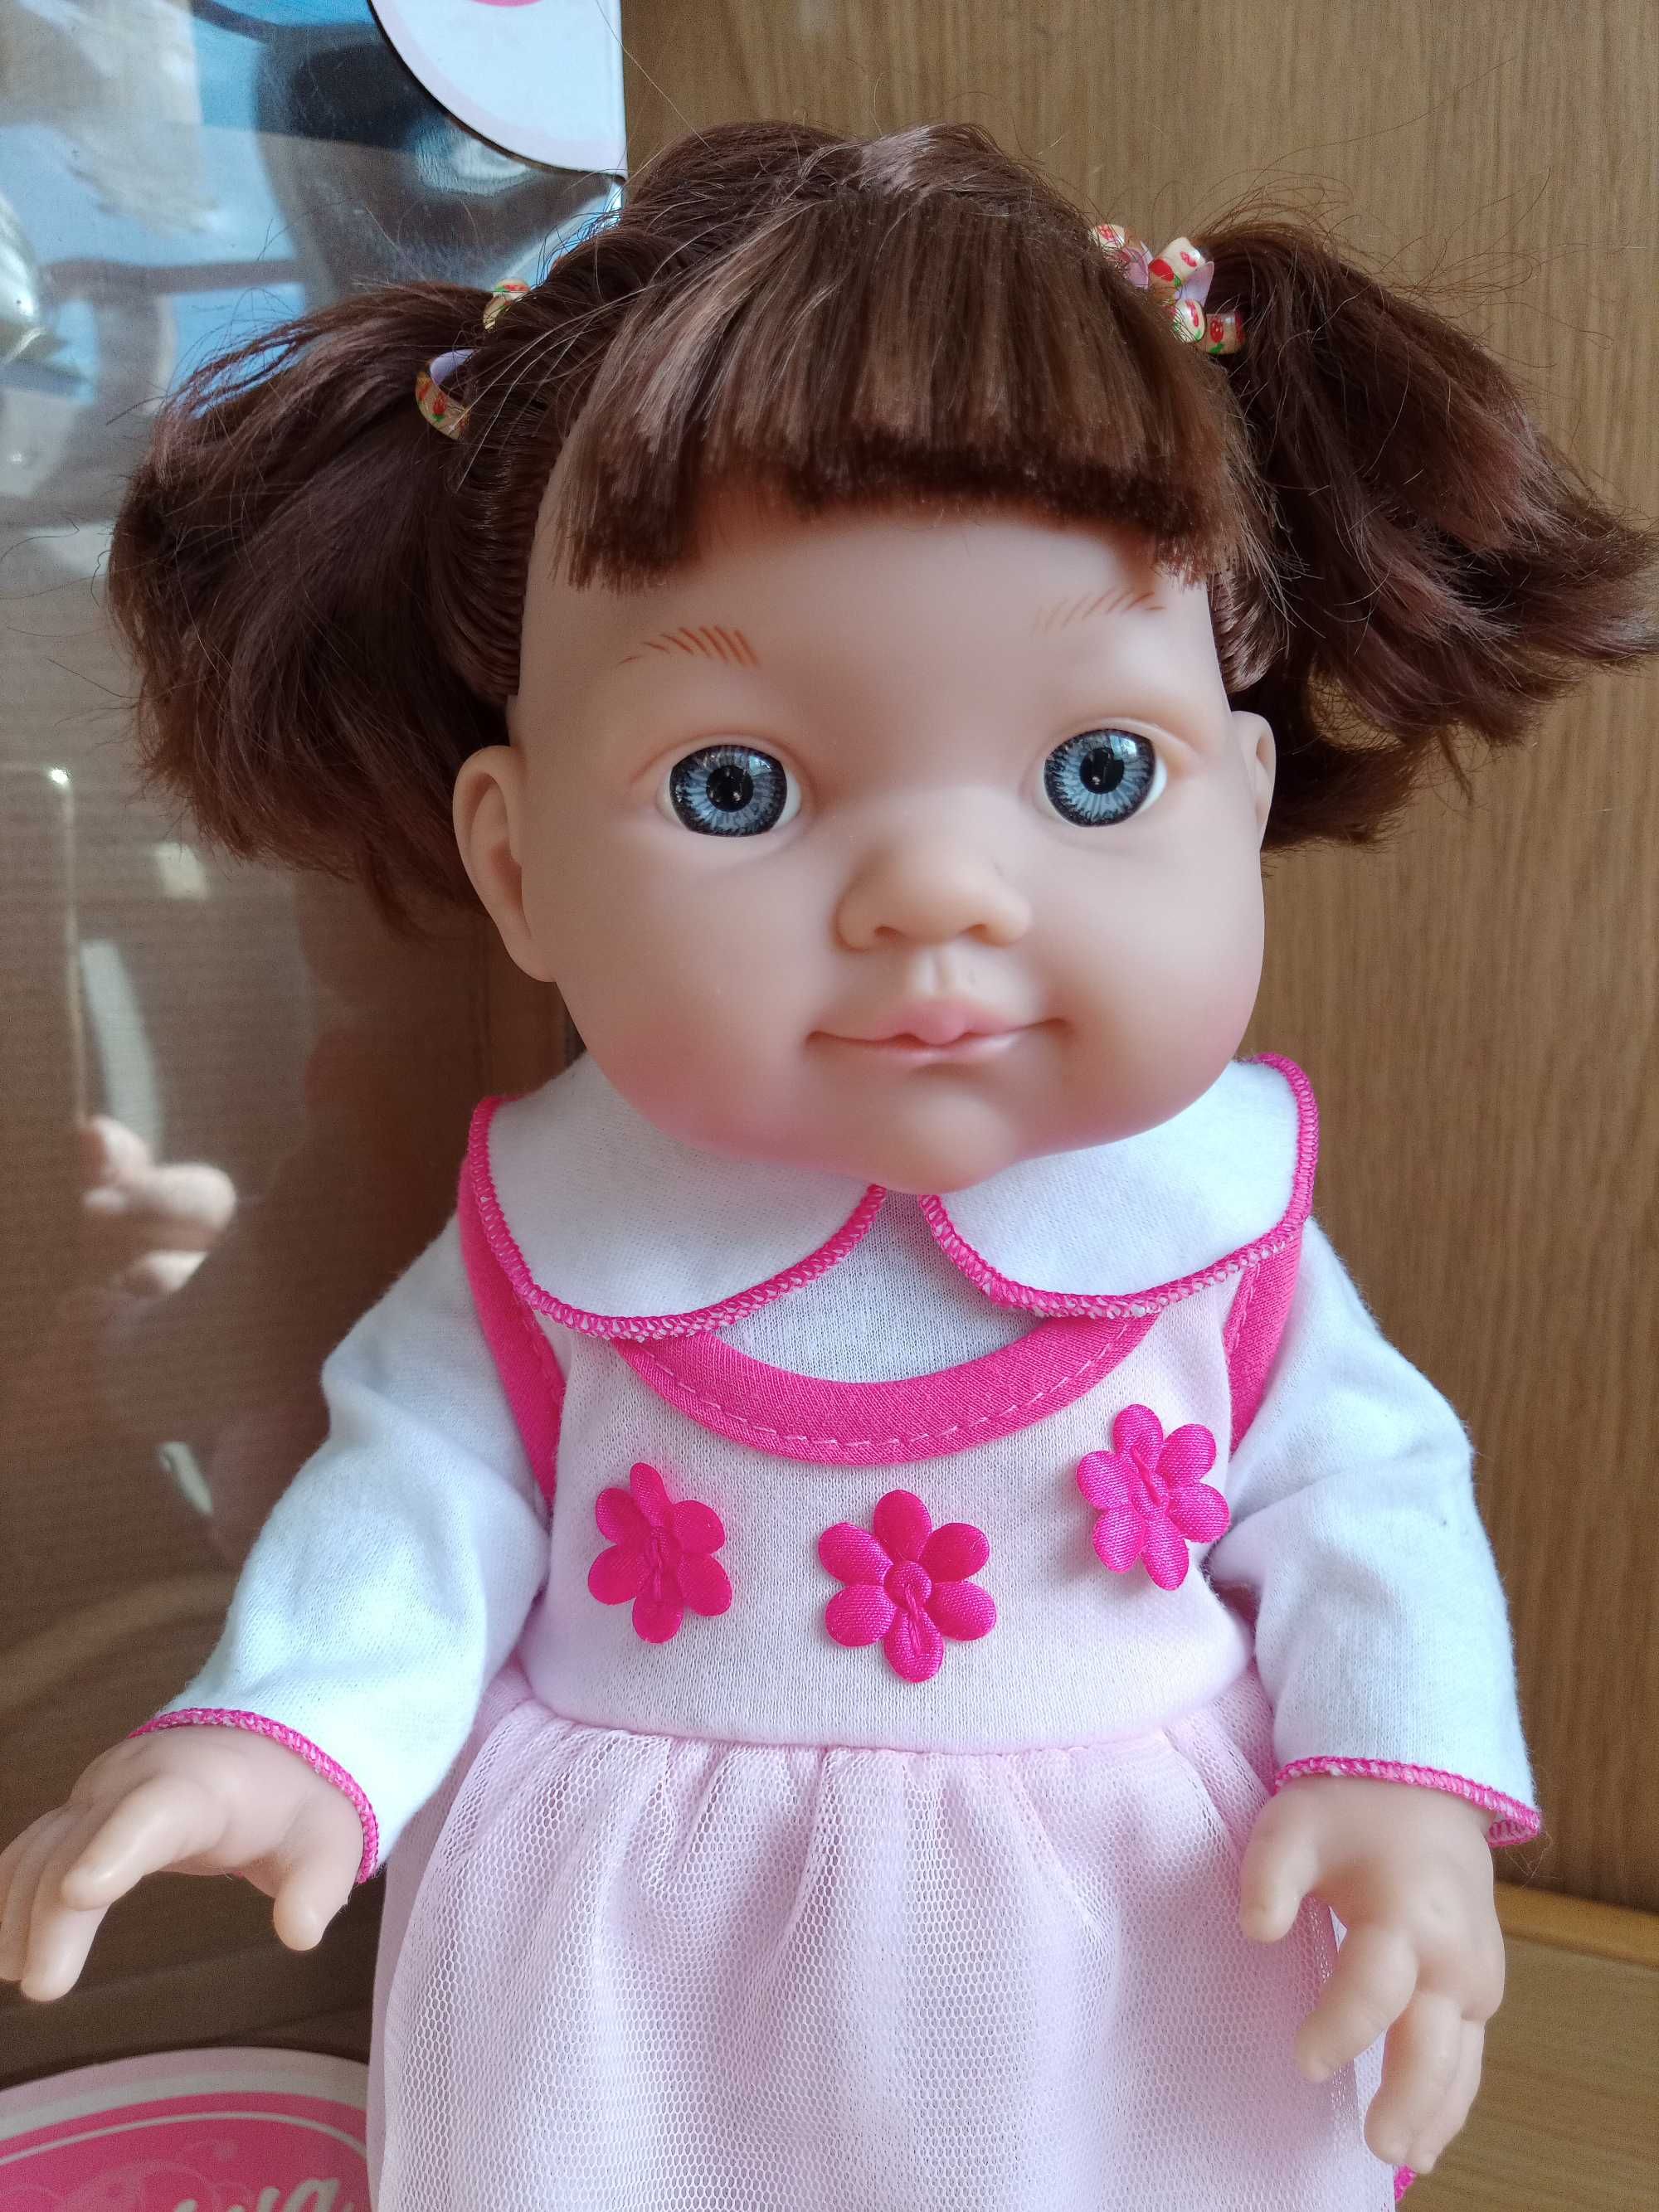 Кукла Anmiya, высота 35см, в коробке, почти  новая + еще одна кукла